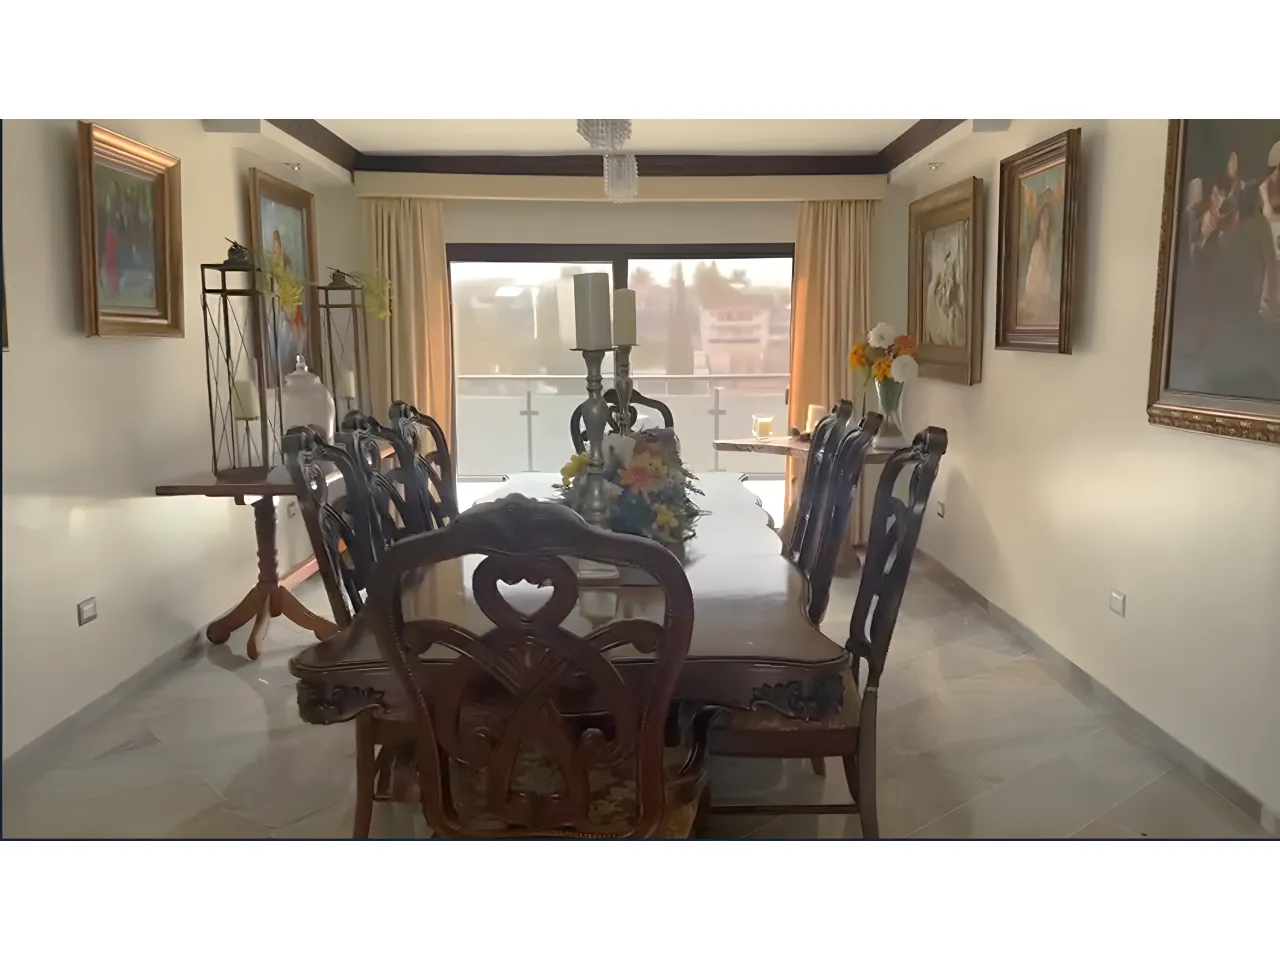 Comedor de la casa en venta, amplio con 8 sillas piso de cerámica de madera, techo color blanco con lámpara colgante y enfrente una puerta corrediza con vista al patio trasero.